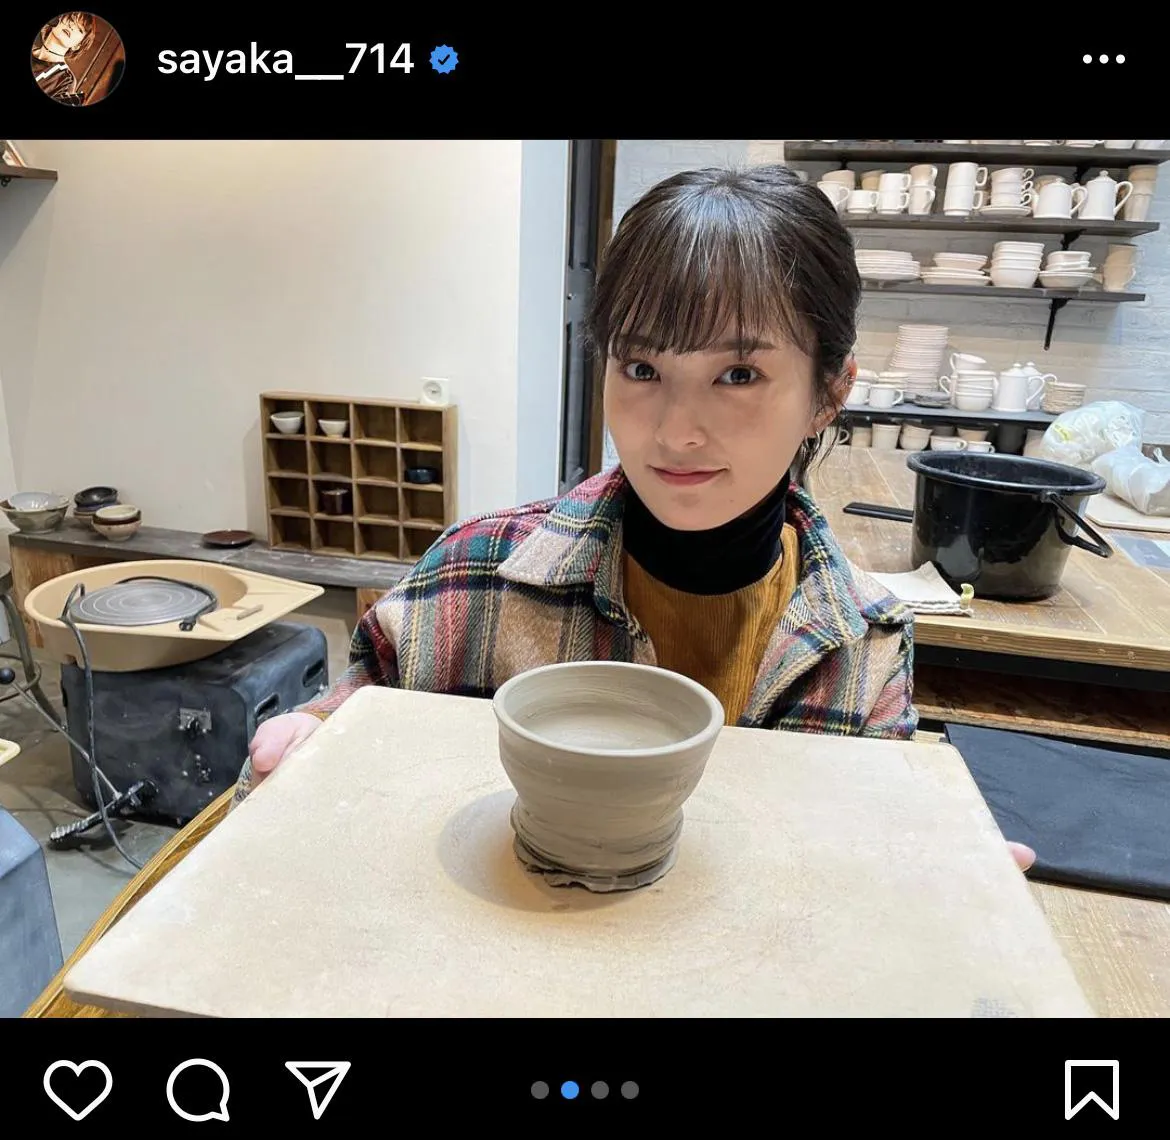 ※画像は山本彩(sayaka__714)公式Instagramのスクリーンショット